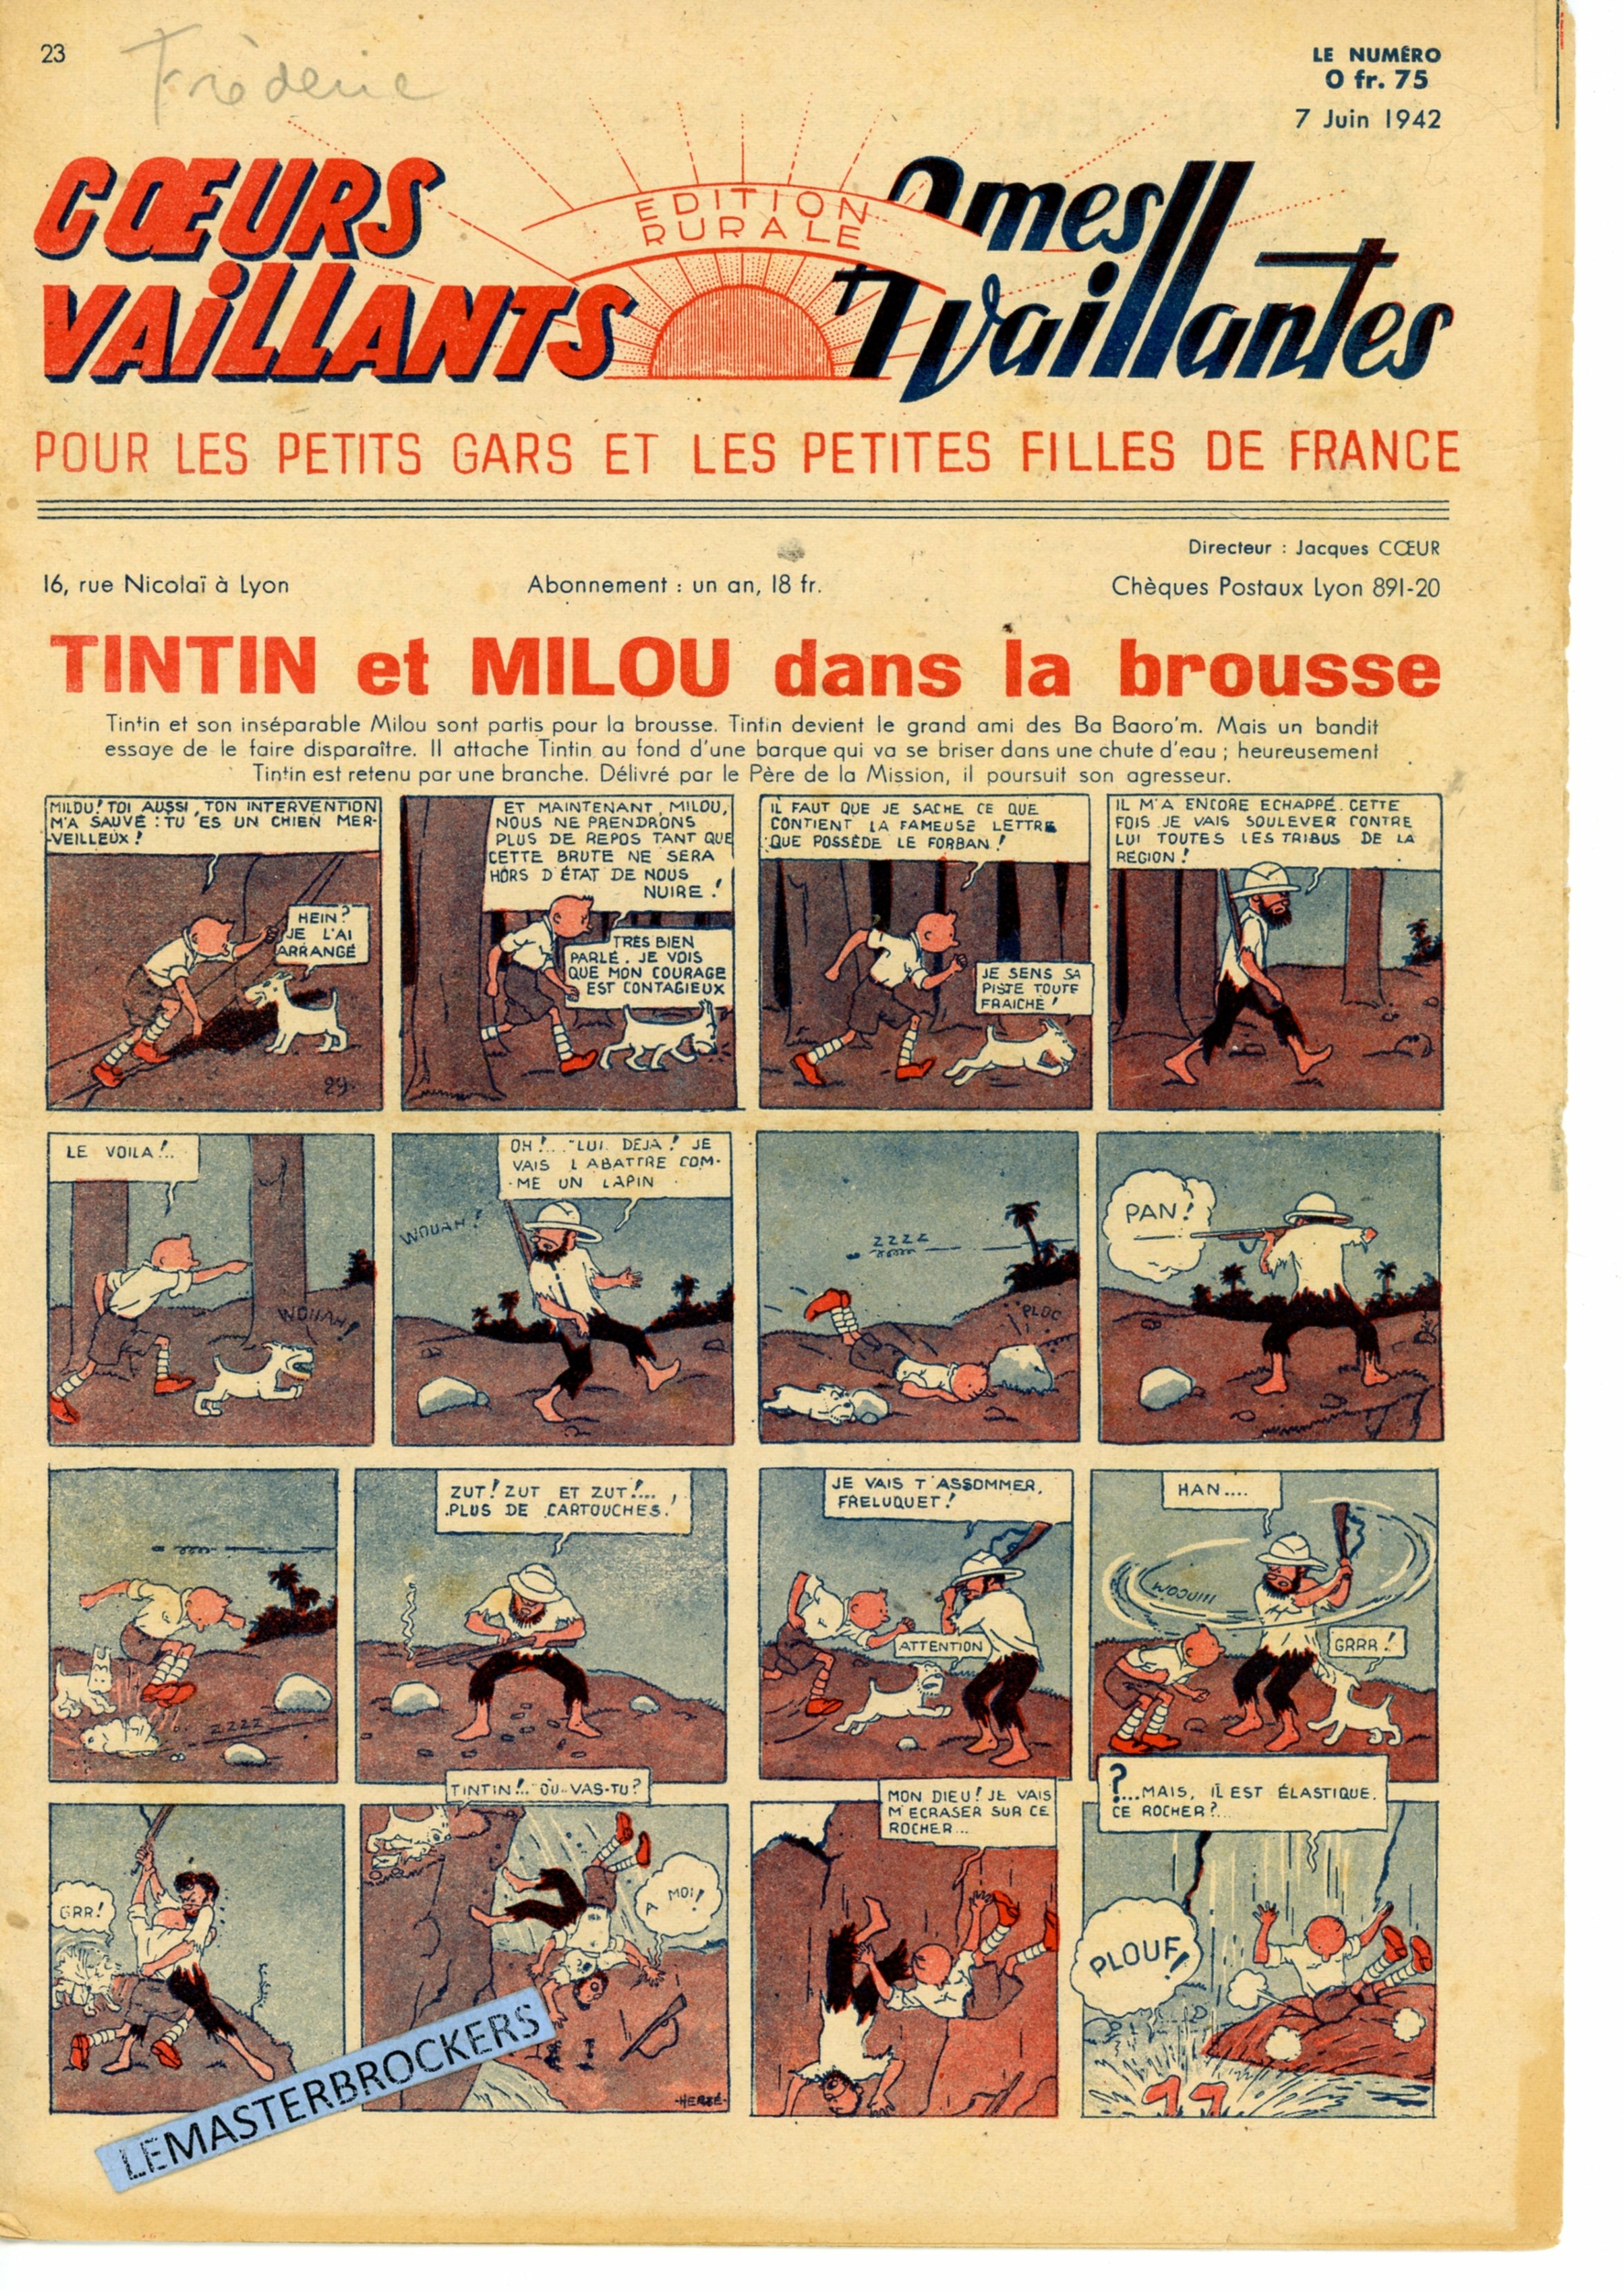 TINTIN ET MILOU DANS LA BROUSSE - COEURS VAILLANTS N° 23 - SUPPLÉMENT BIMENSUEL 7 JUIN 1942